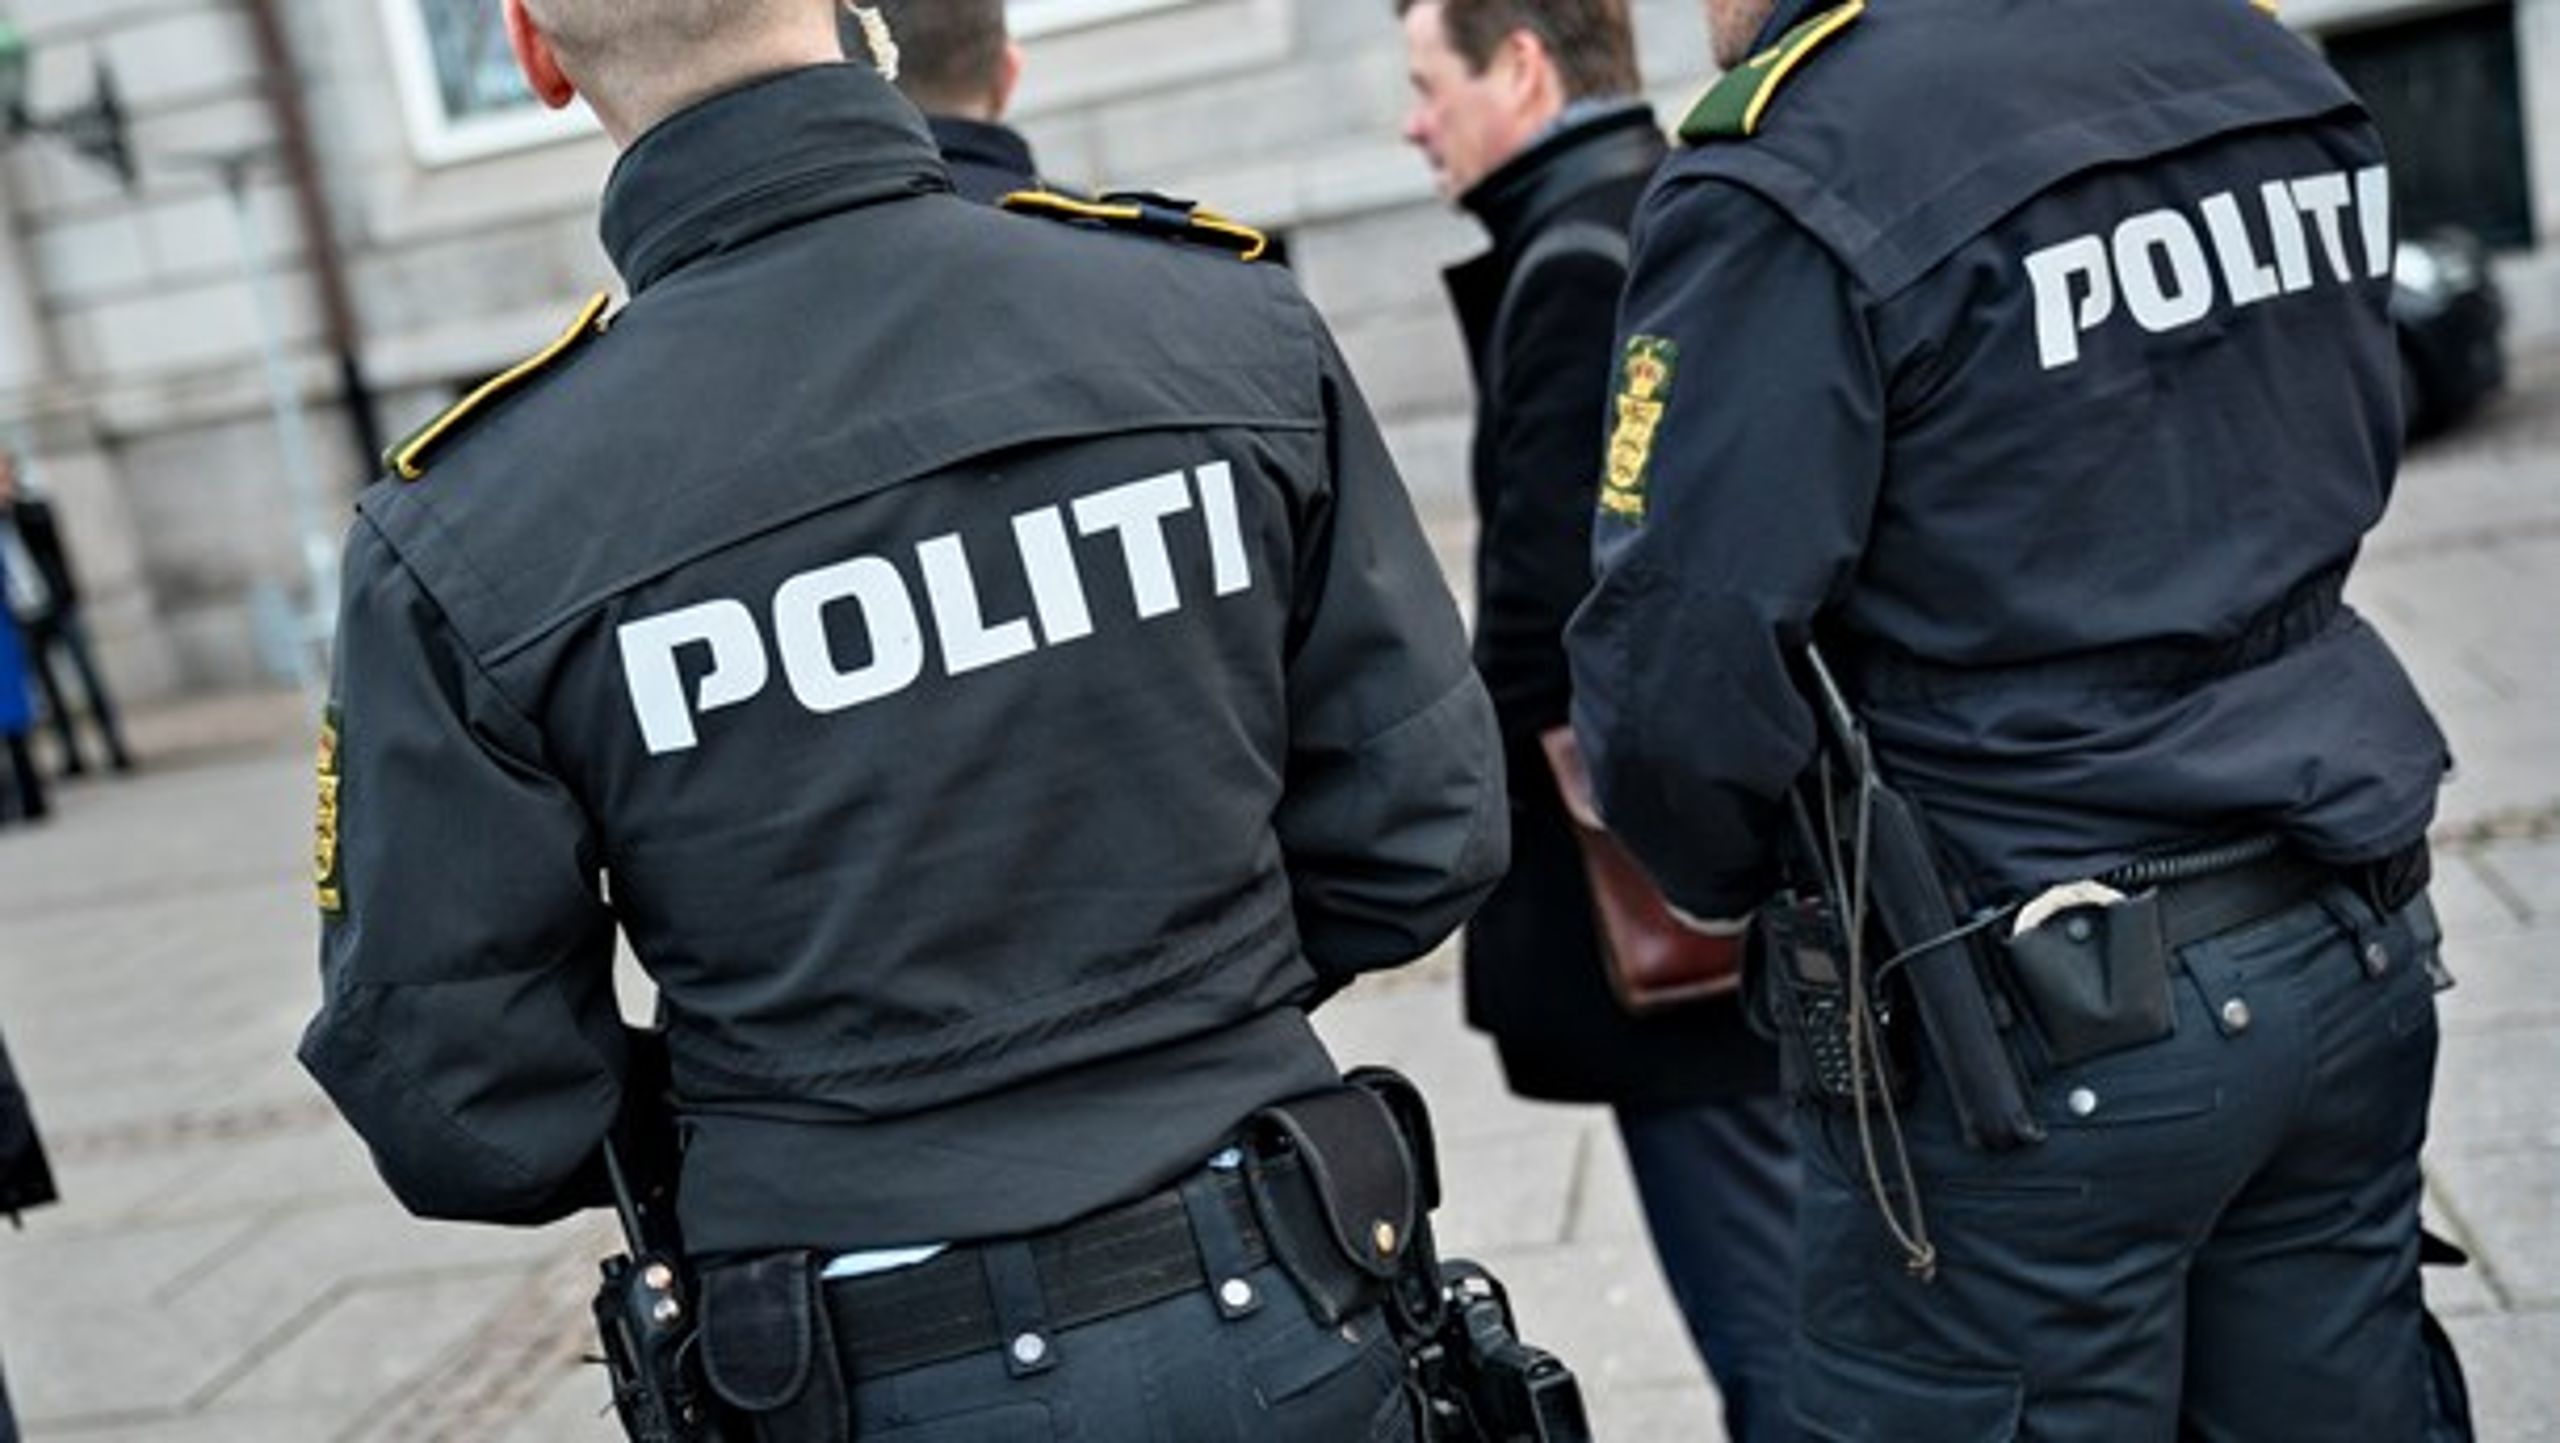 Politiet og PET er de to offentlige organisationer, som danskerne har mest tillid til.